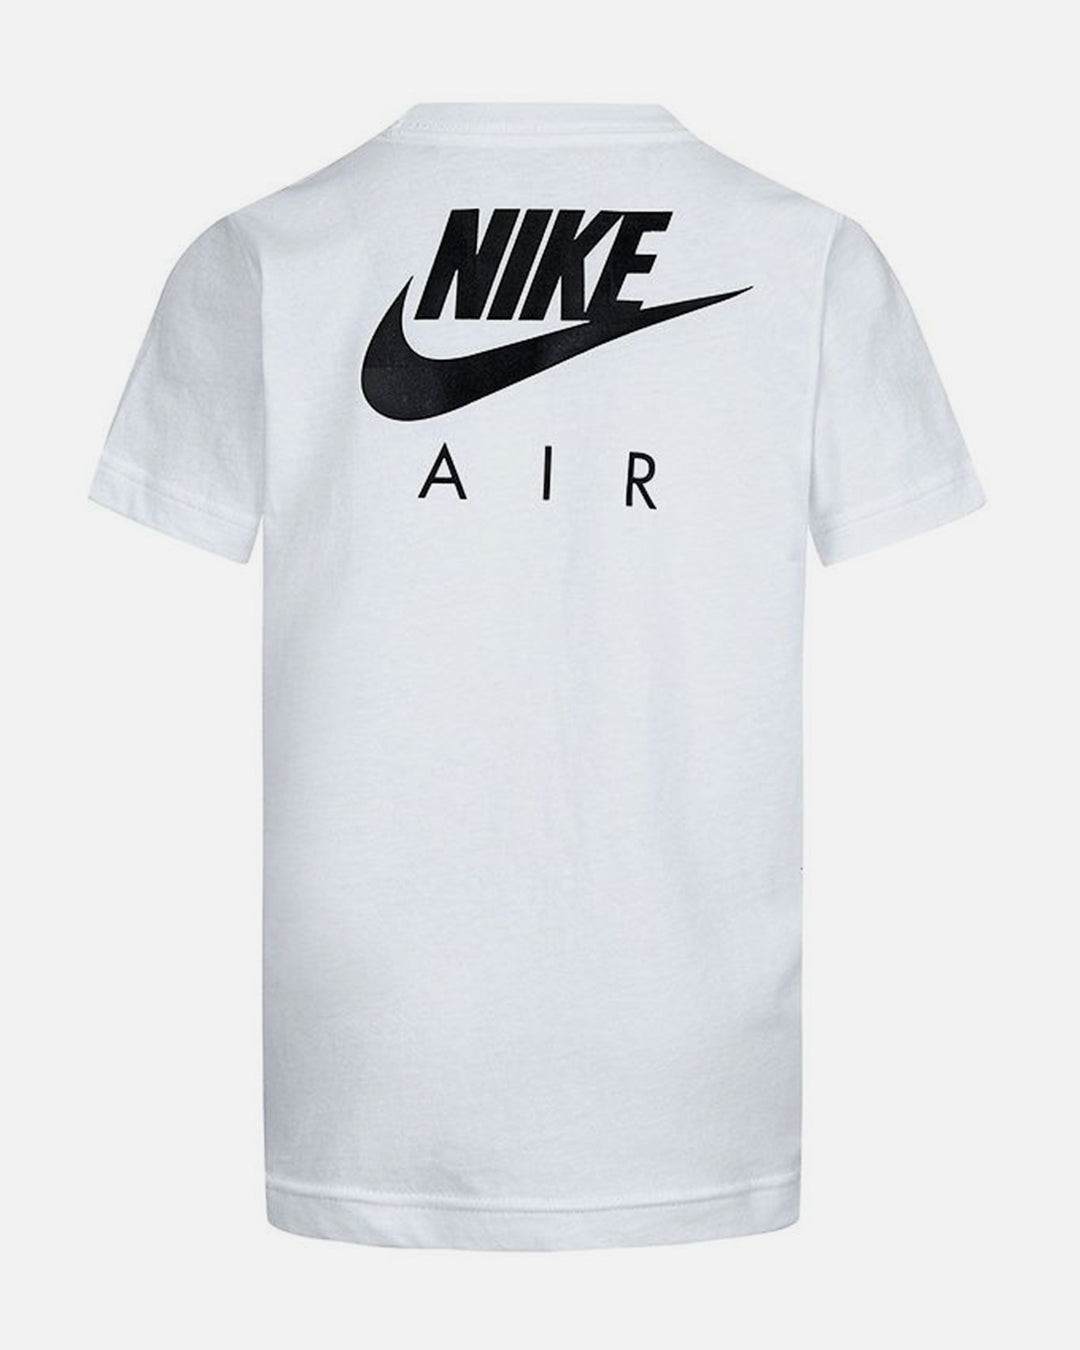 T-Shirt Nike Air Enfant - Blanc